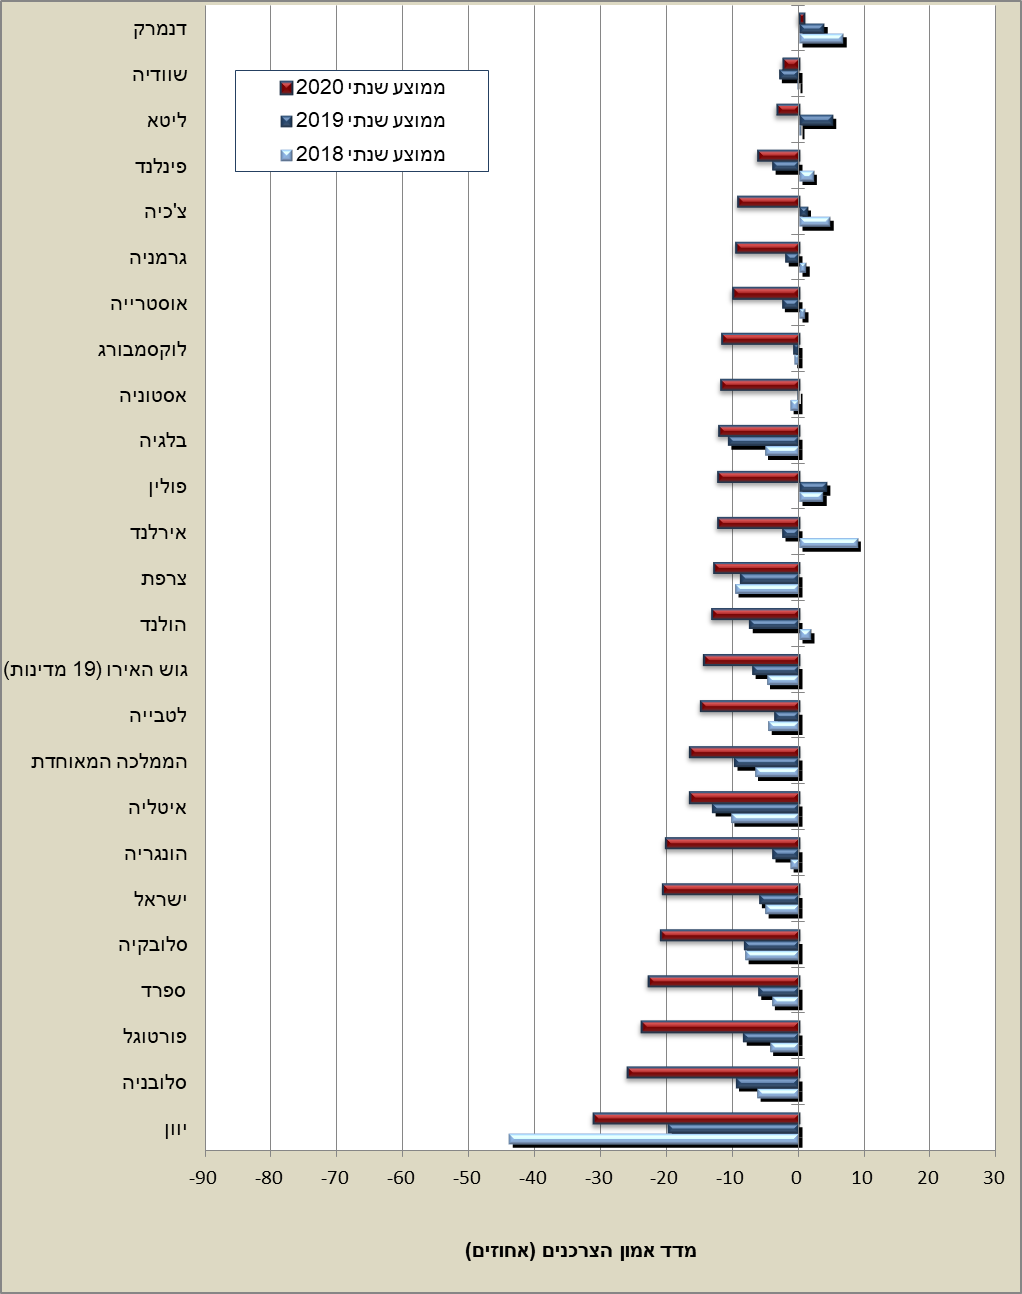 אמון הצרכנים ממוצע שנתי במבחר מדינות ה-OECD, סיכום 2020